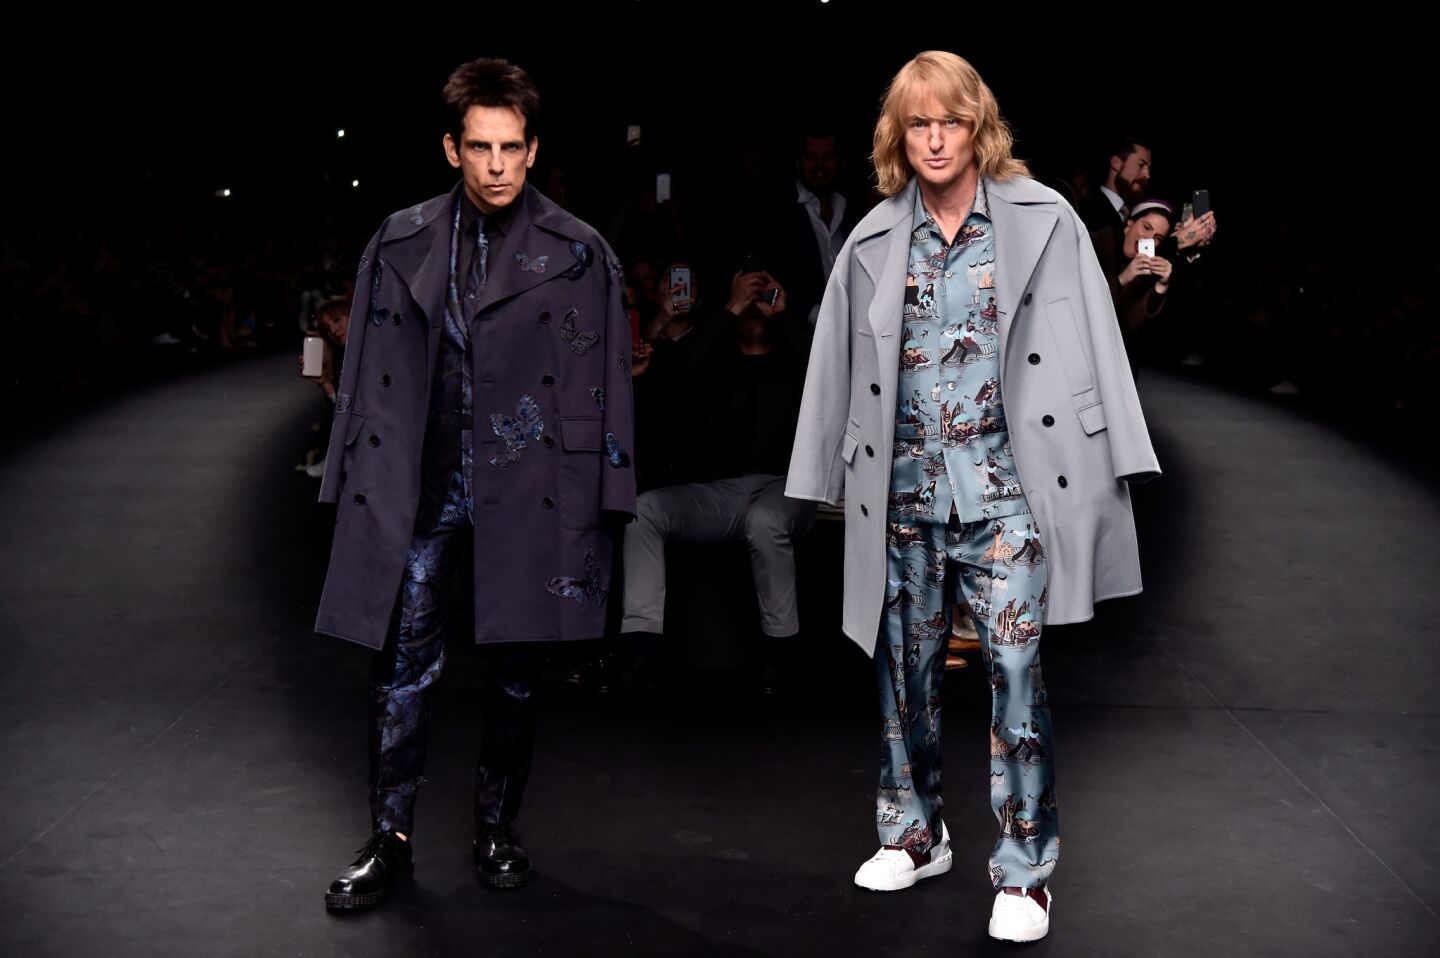 Derek Zoolander (Ben Stiller), left, and Hansel (Owen Wilson) on the Valentino runway during Paris Fashion Week in March 2015.